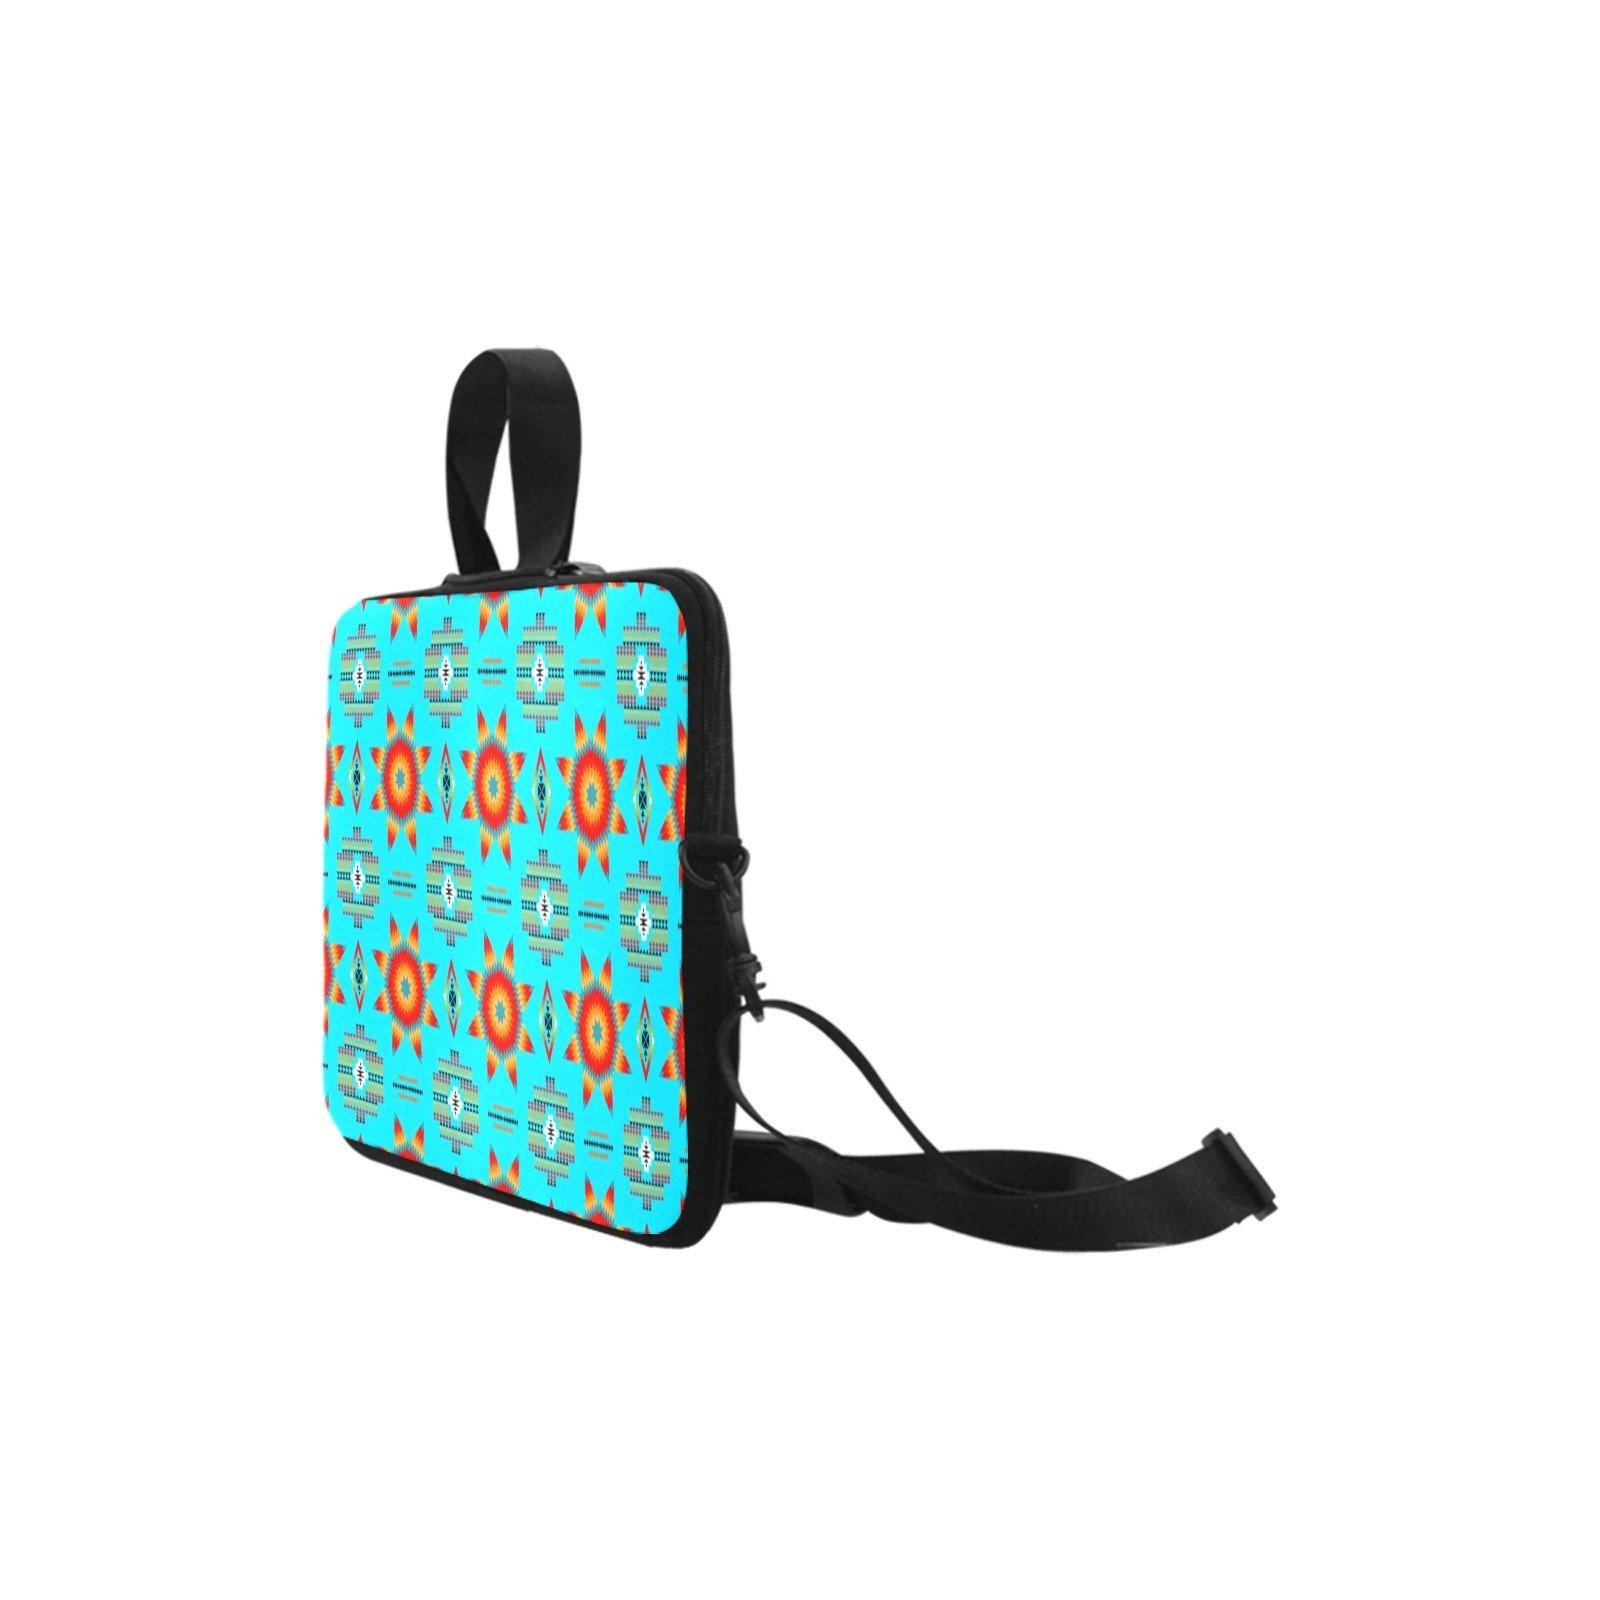 Rising Star Harvest Moon Laptop Handbags 10" bag e-joyer 